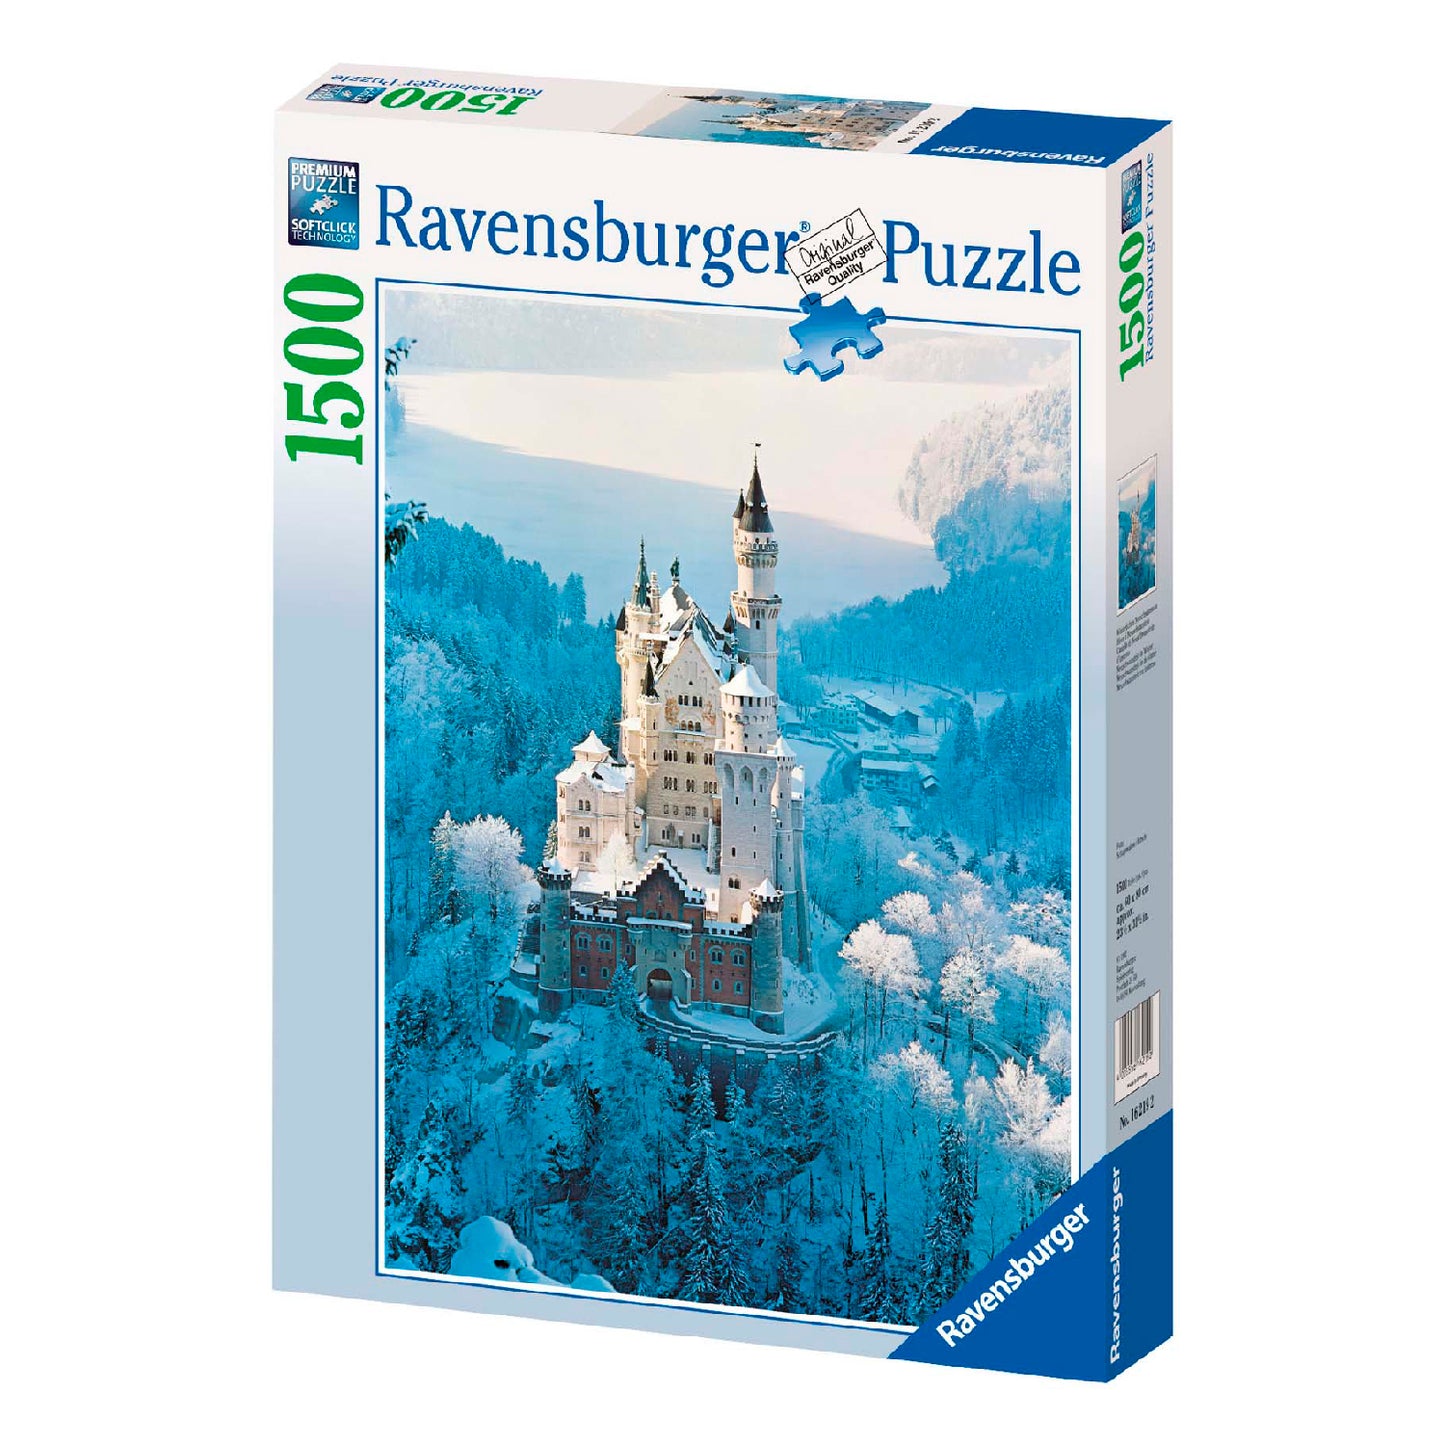 Ravensburger – Puzzle 1500 PZ.